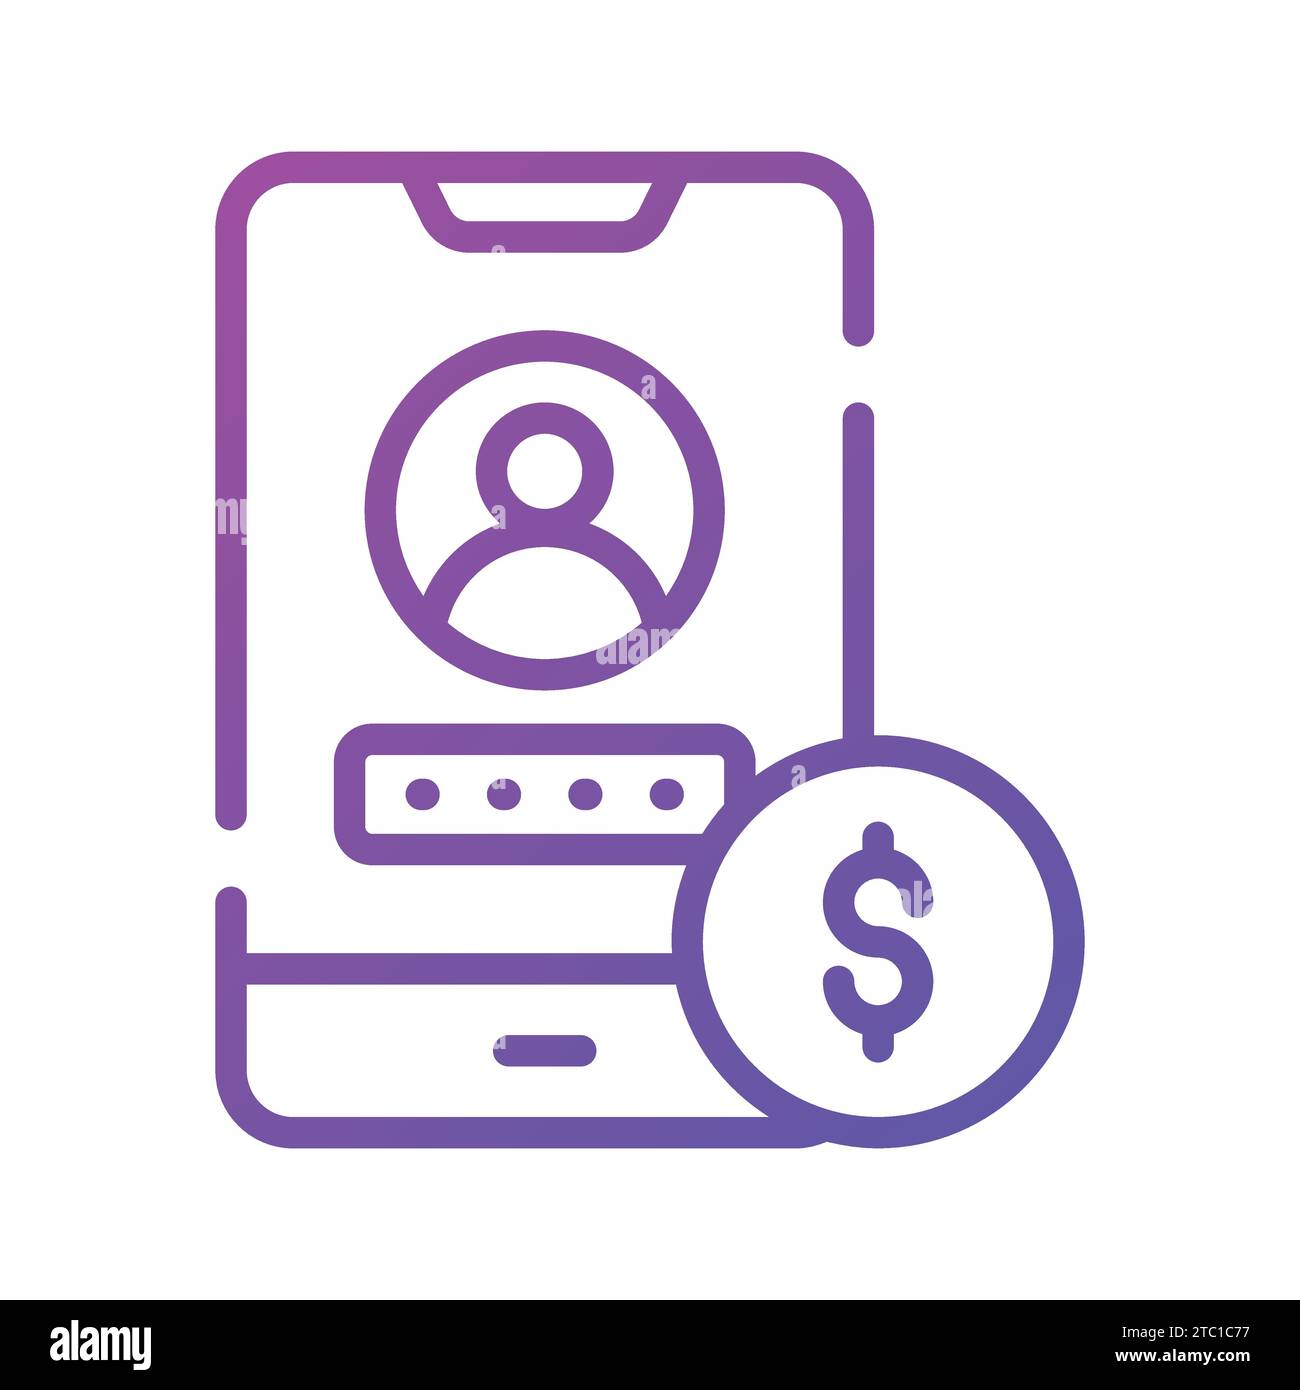 Utente e password all'interno di dispositivi mobili con simbolo di dollaro che indica l'icona dell'app bancaria, pronta per l'uso premium. Illustrazione Vettoriale